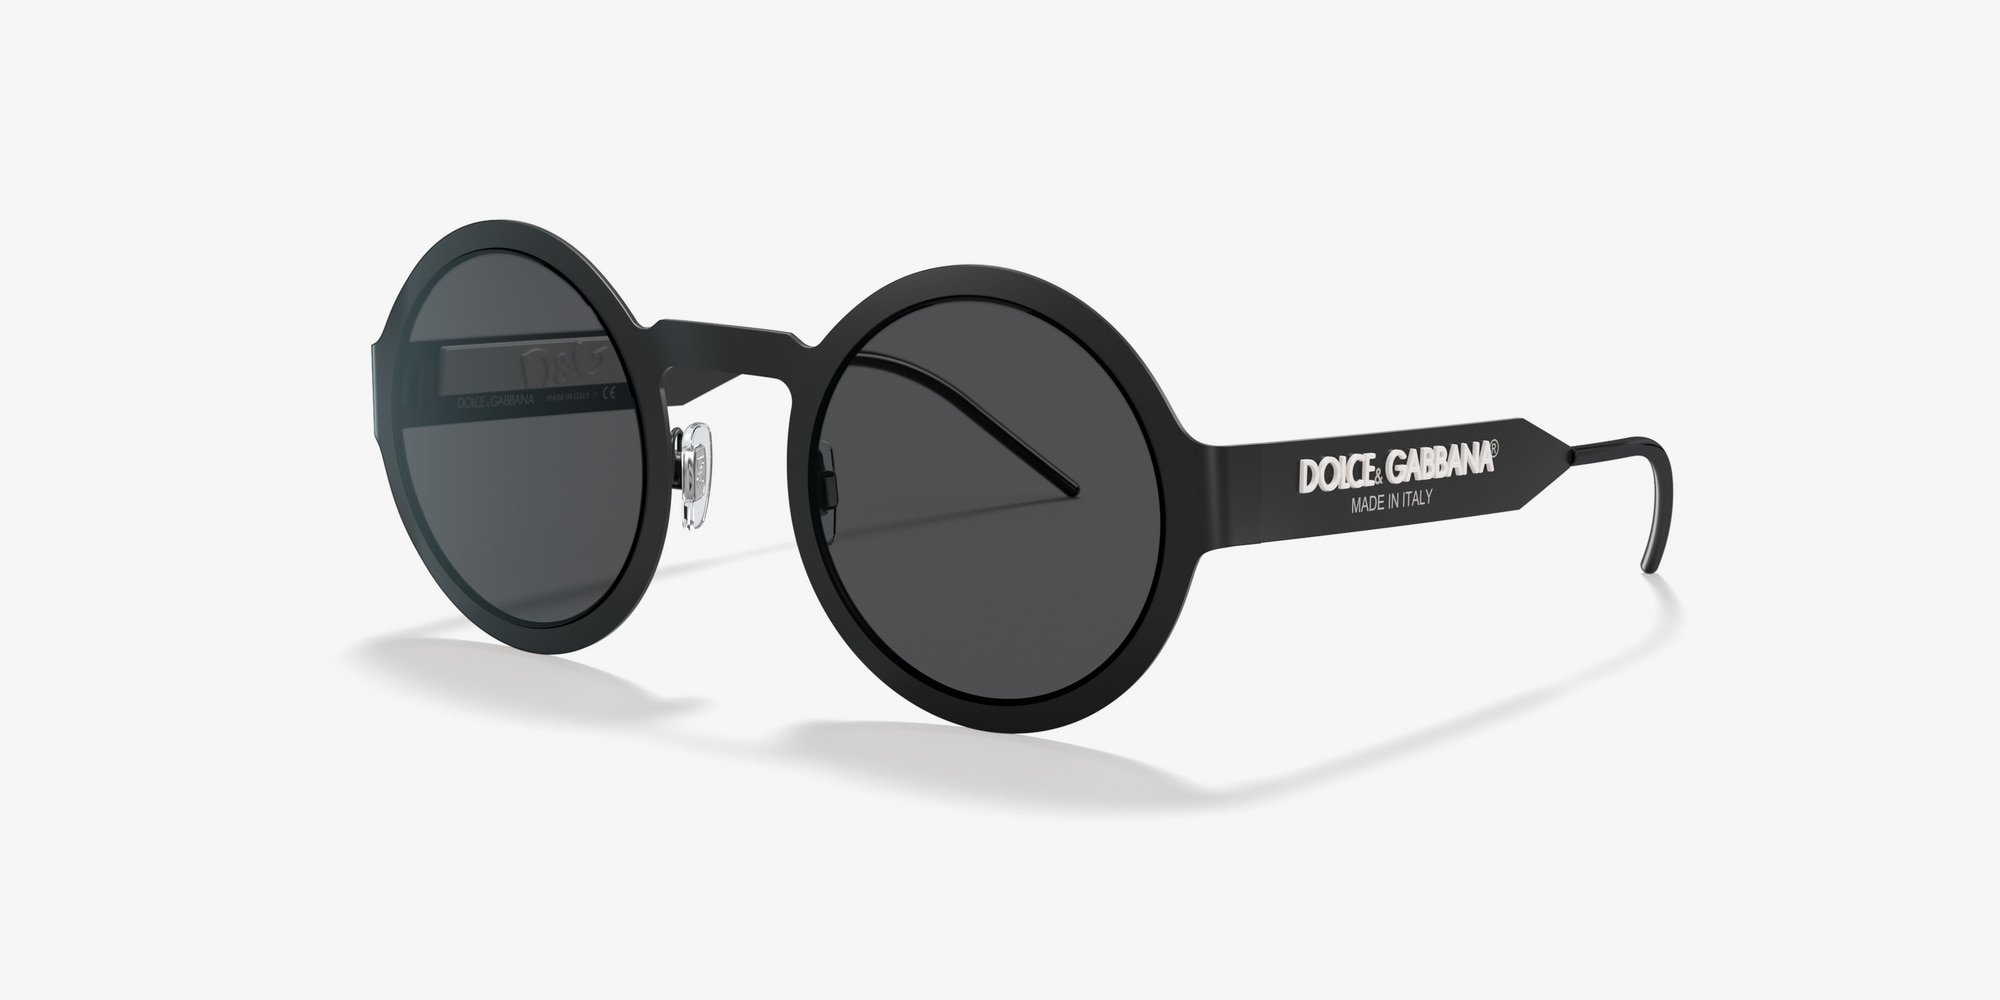 dolce & gabbana sunglasses cheap